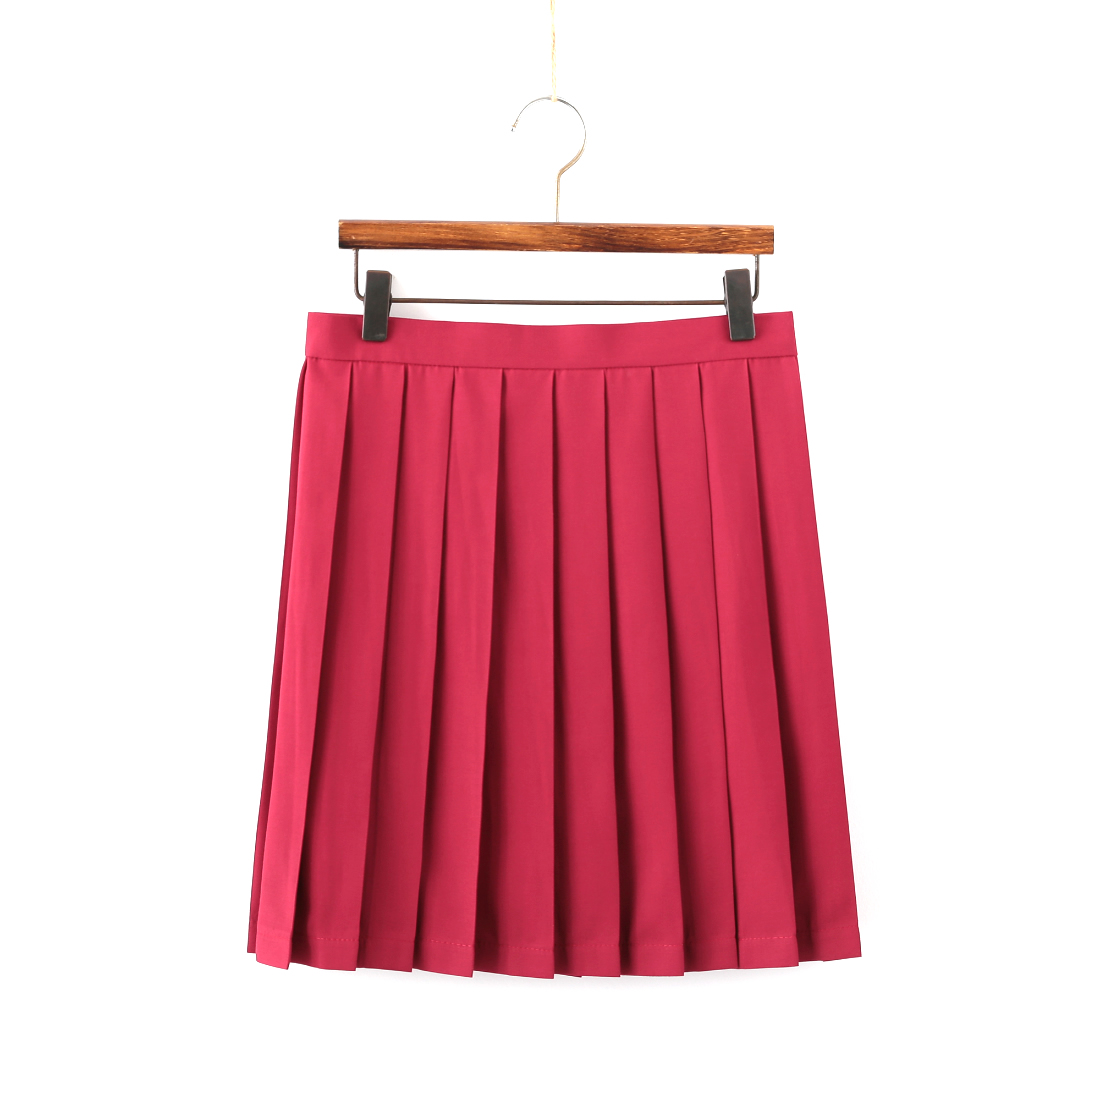 Red short skirt (42cm)